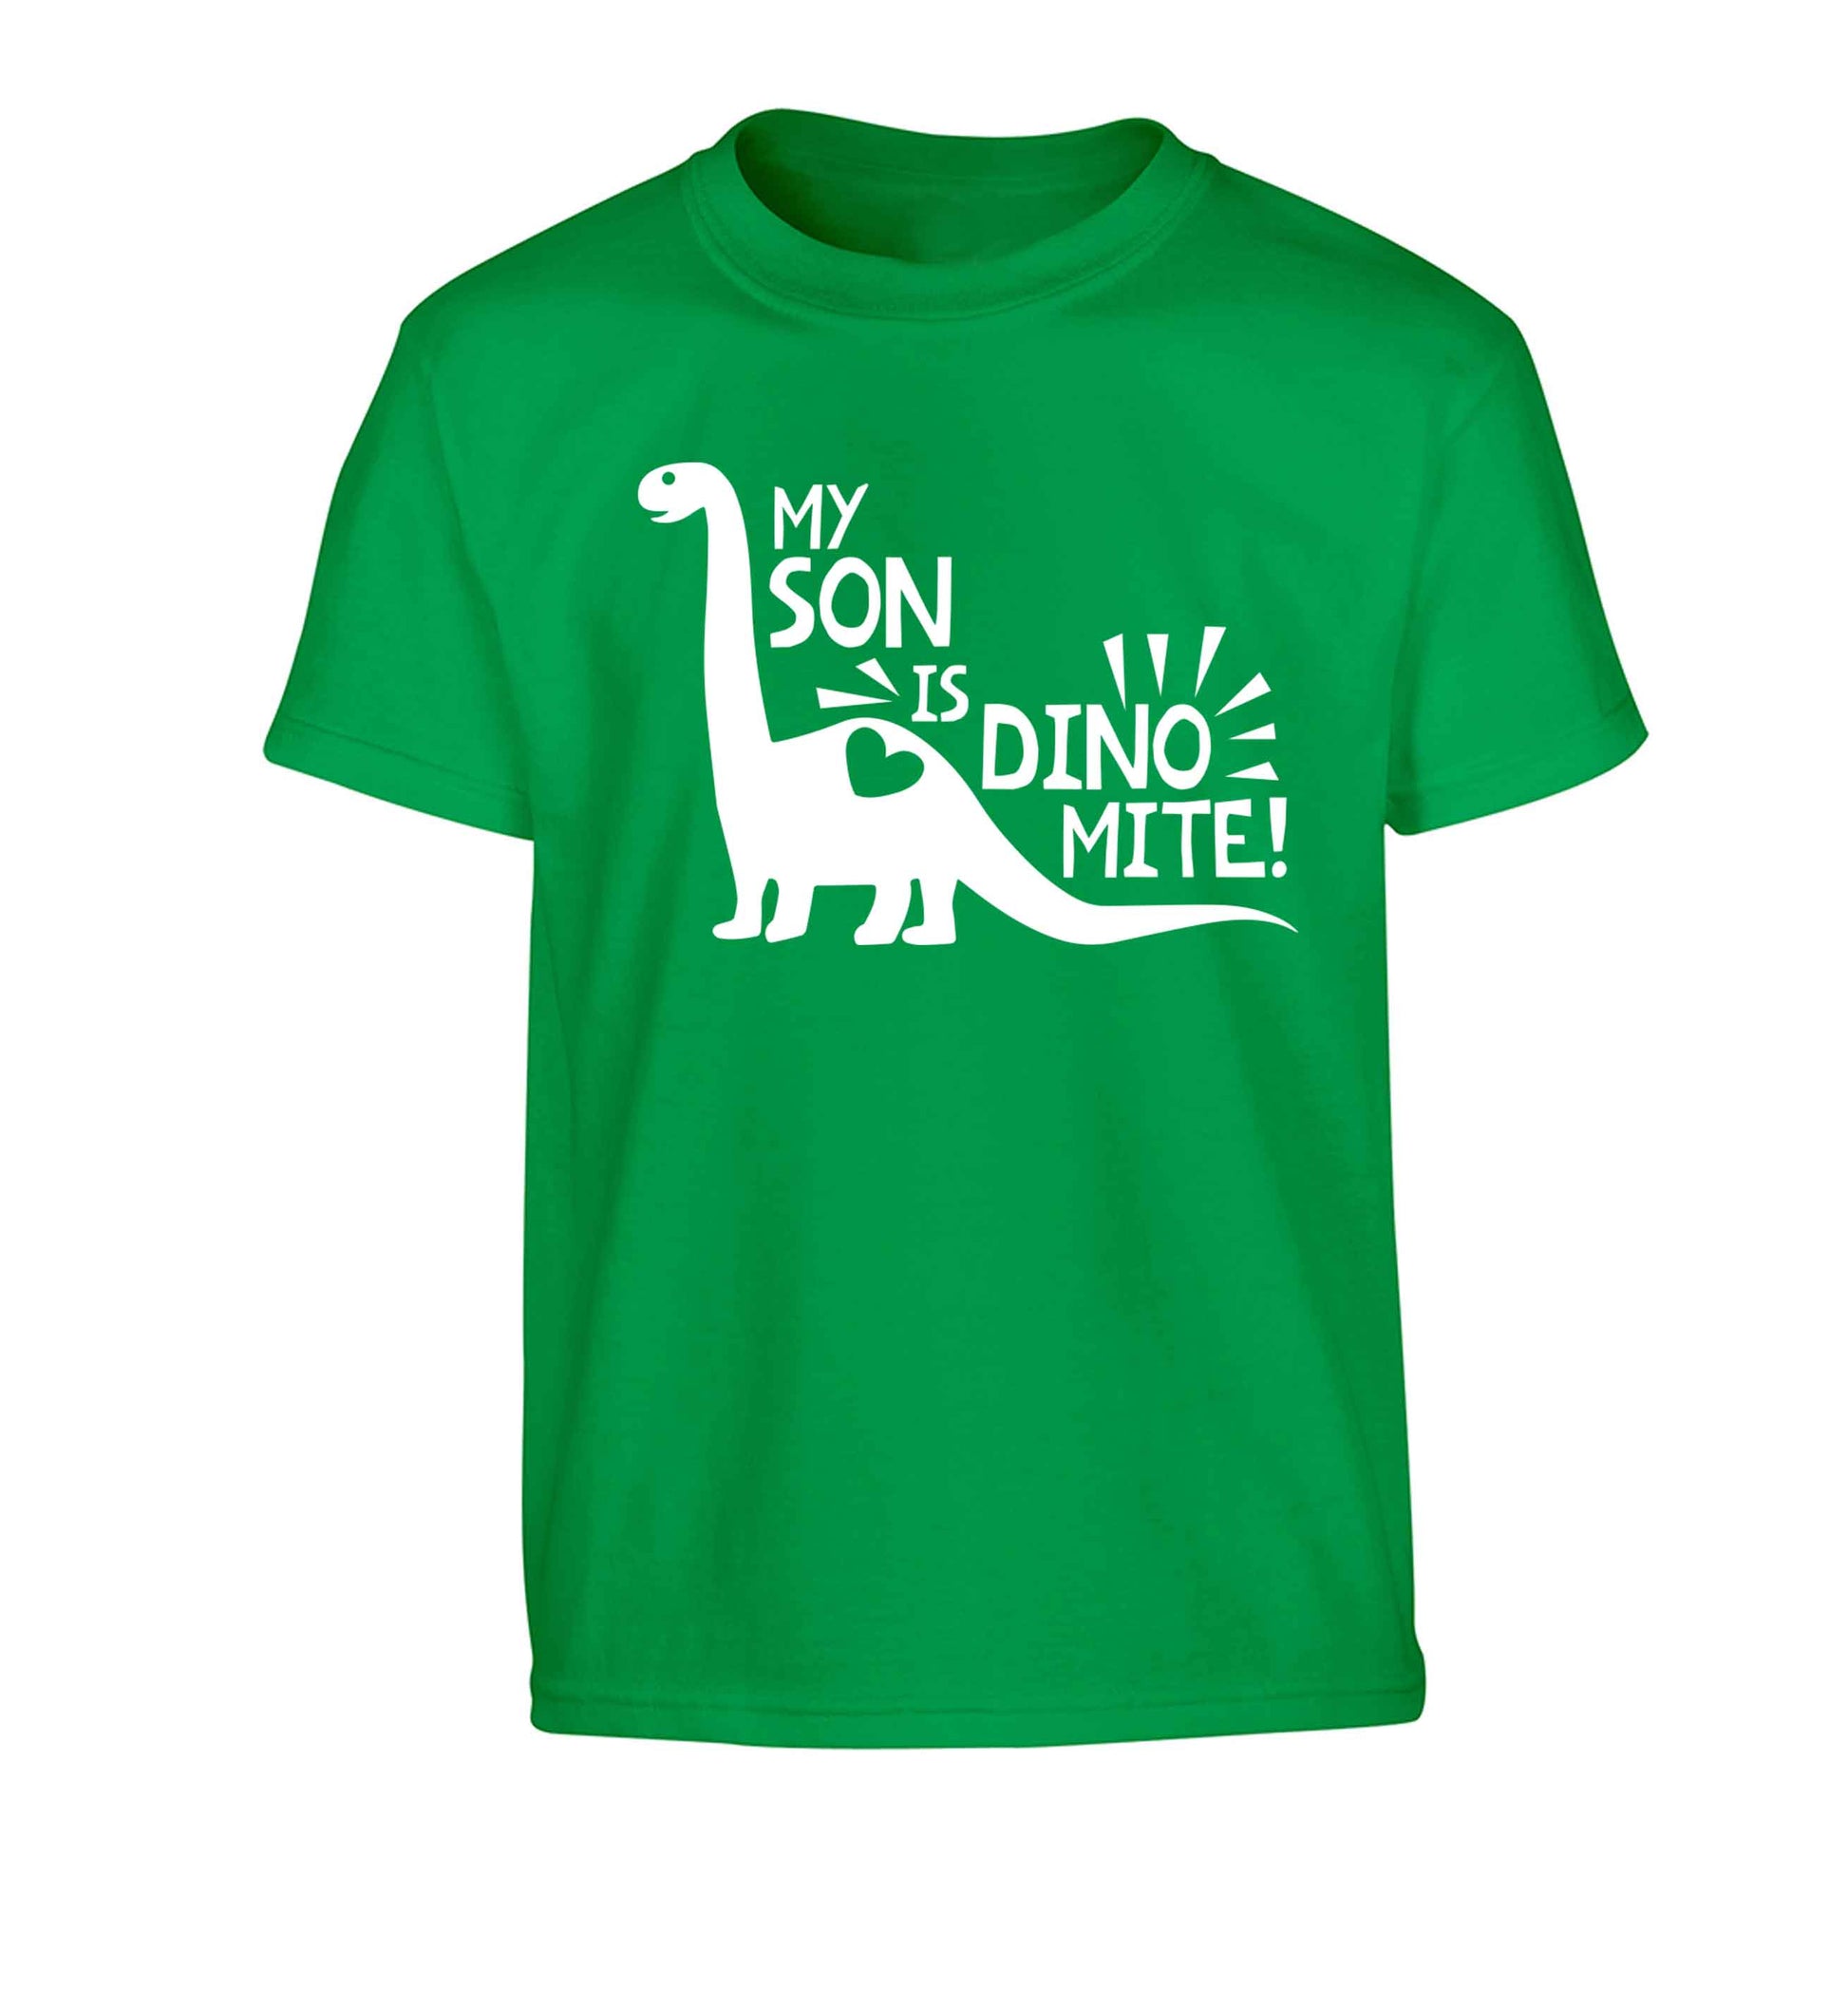 My son is dinomite! Children's green Tshirt 12-13 Years